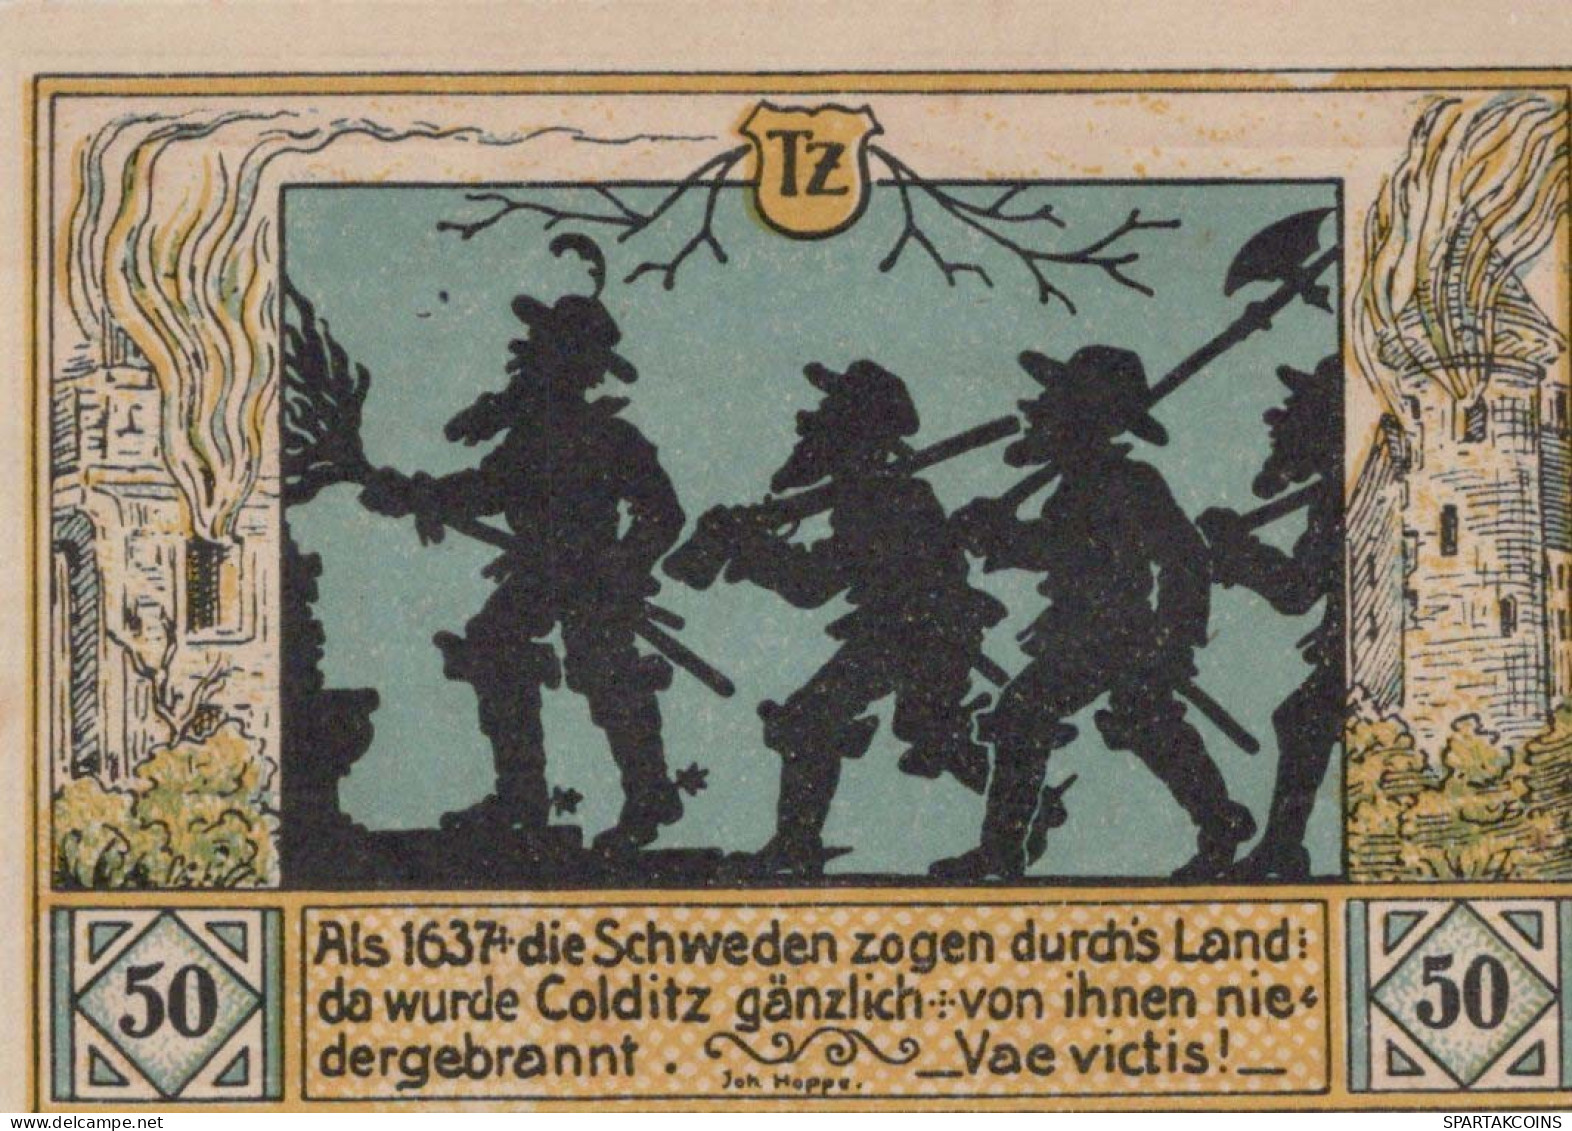 50 PFENNIG 1921 Stadt COLDITZ Saxony UNC DEUTSCHLAND Notgeld Banknote #PA400 - [11] Local Banknote Issues